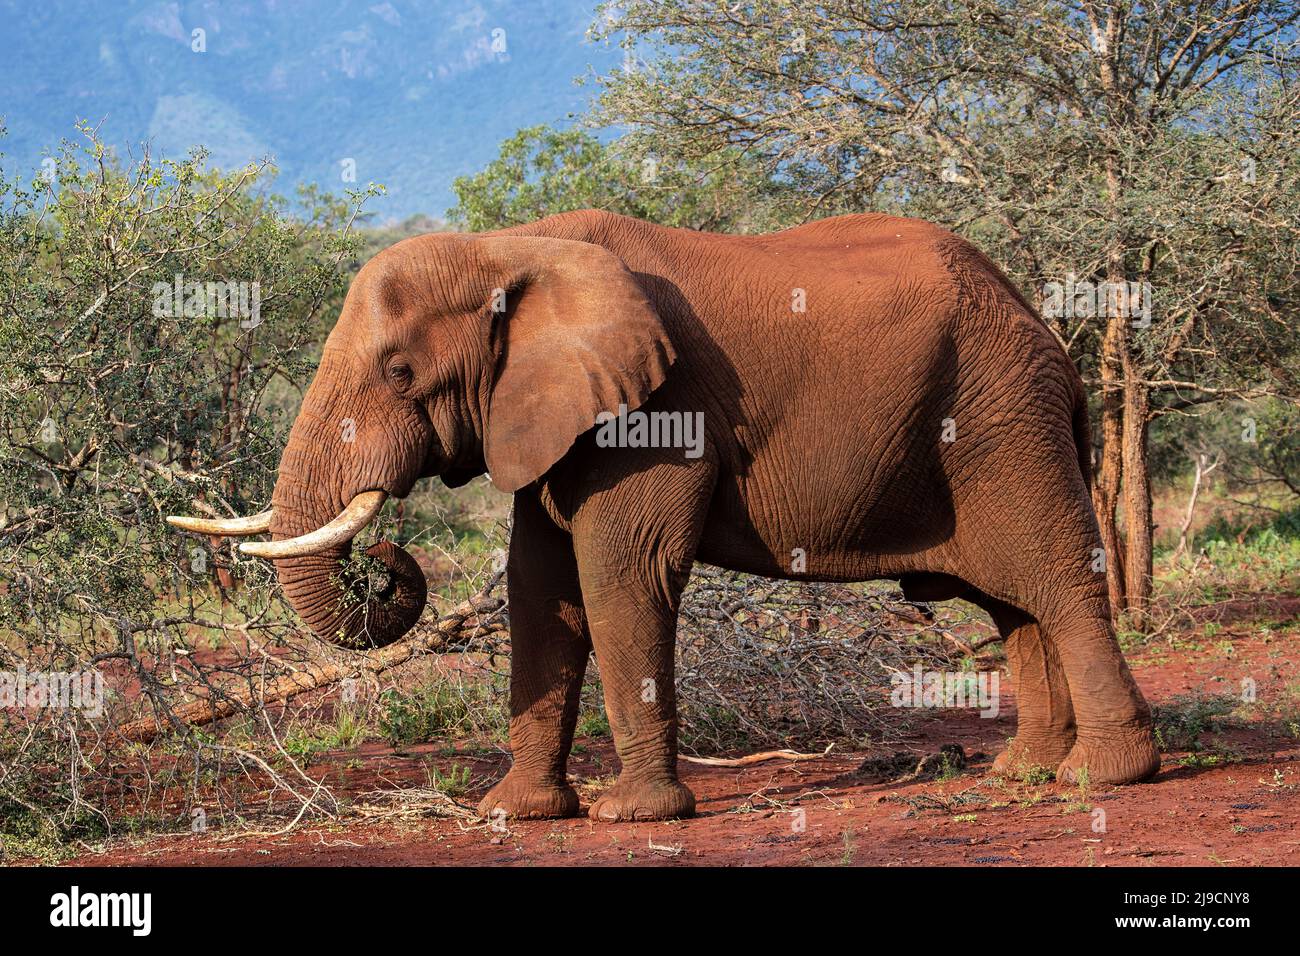 Afrikanischer Elefant Loxodonta africana mit großen Stoßzähnen im Profil, der unter Akazienbäumen in Südafrika surft Stockfoto